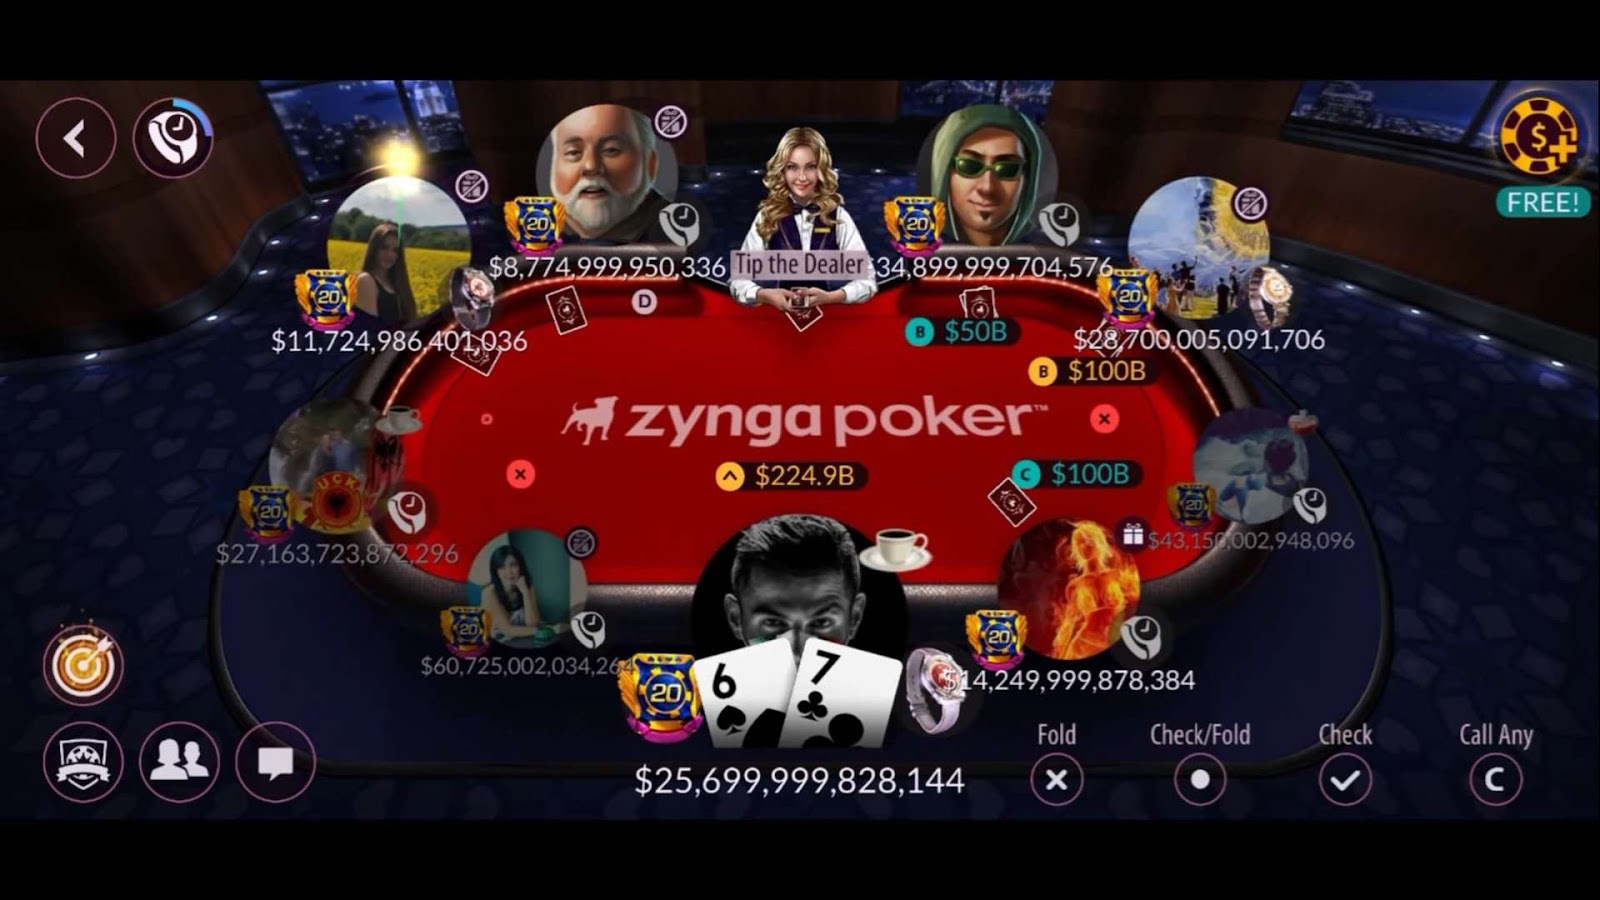 Zynga Poker game interface